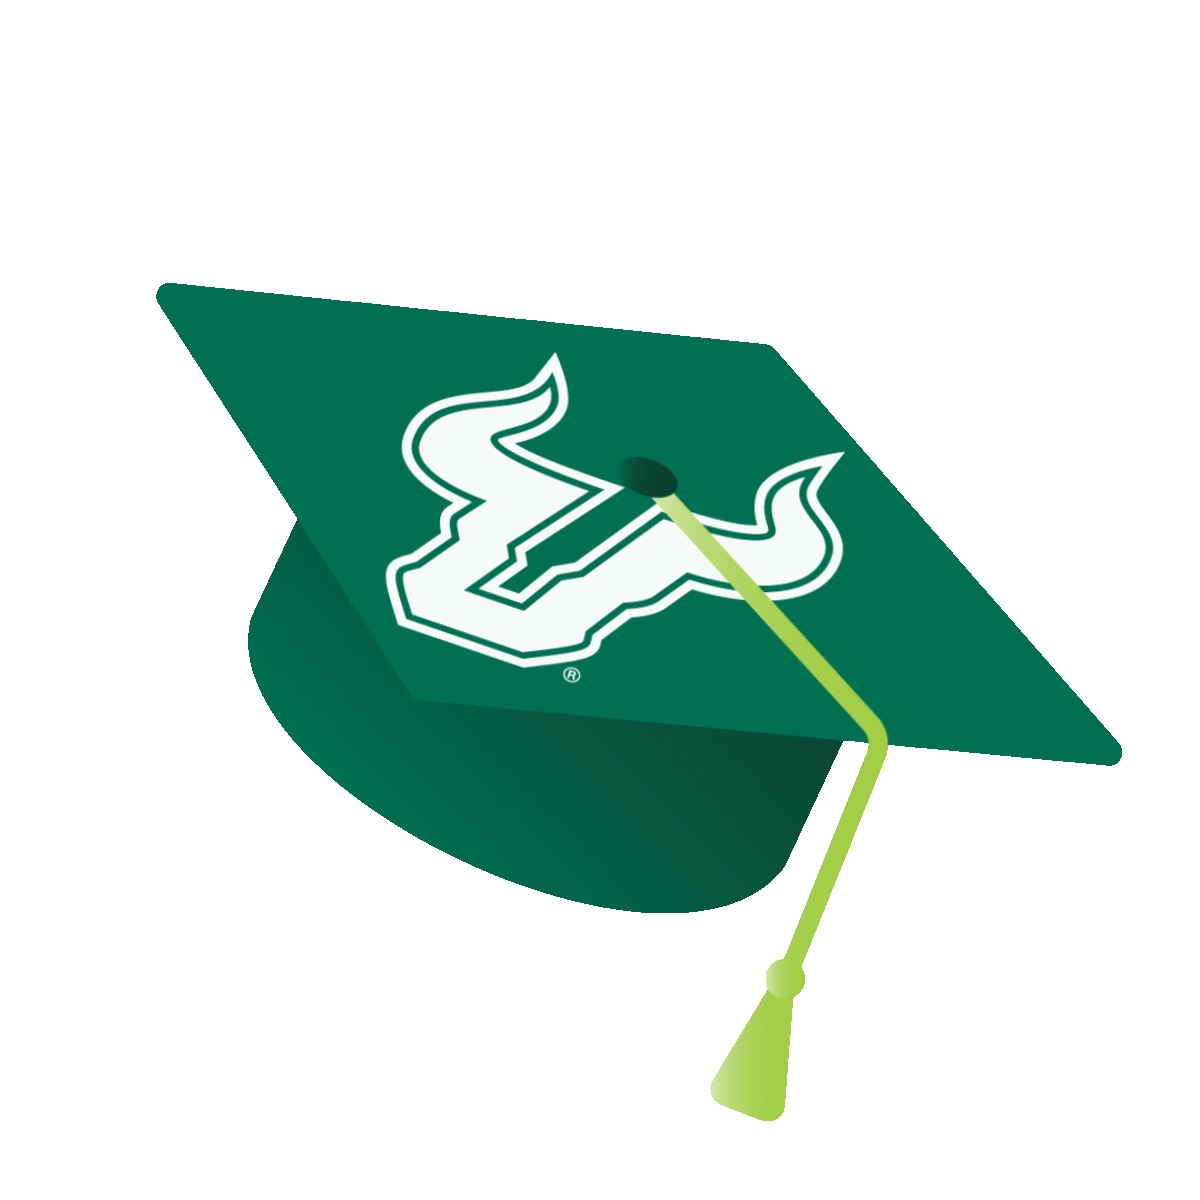 ֱ green graduation cap with gold tassle